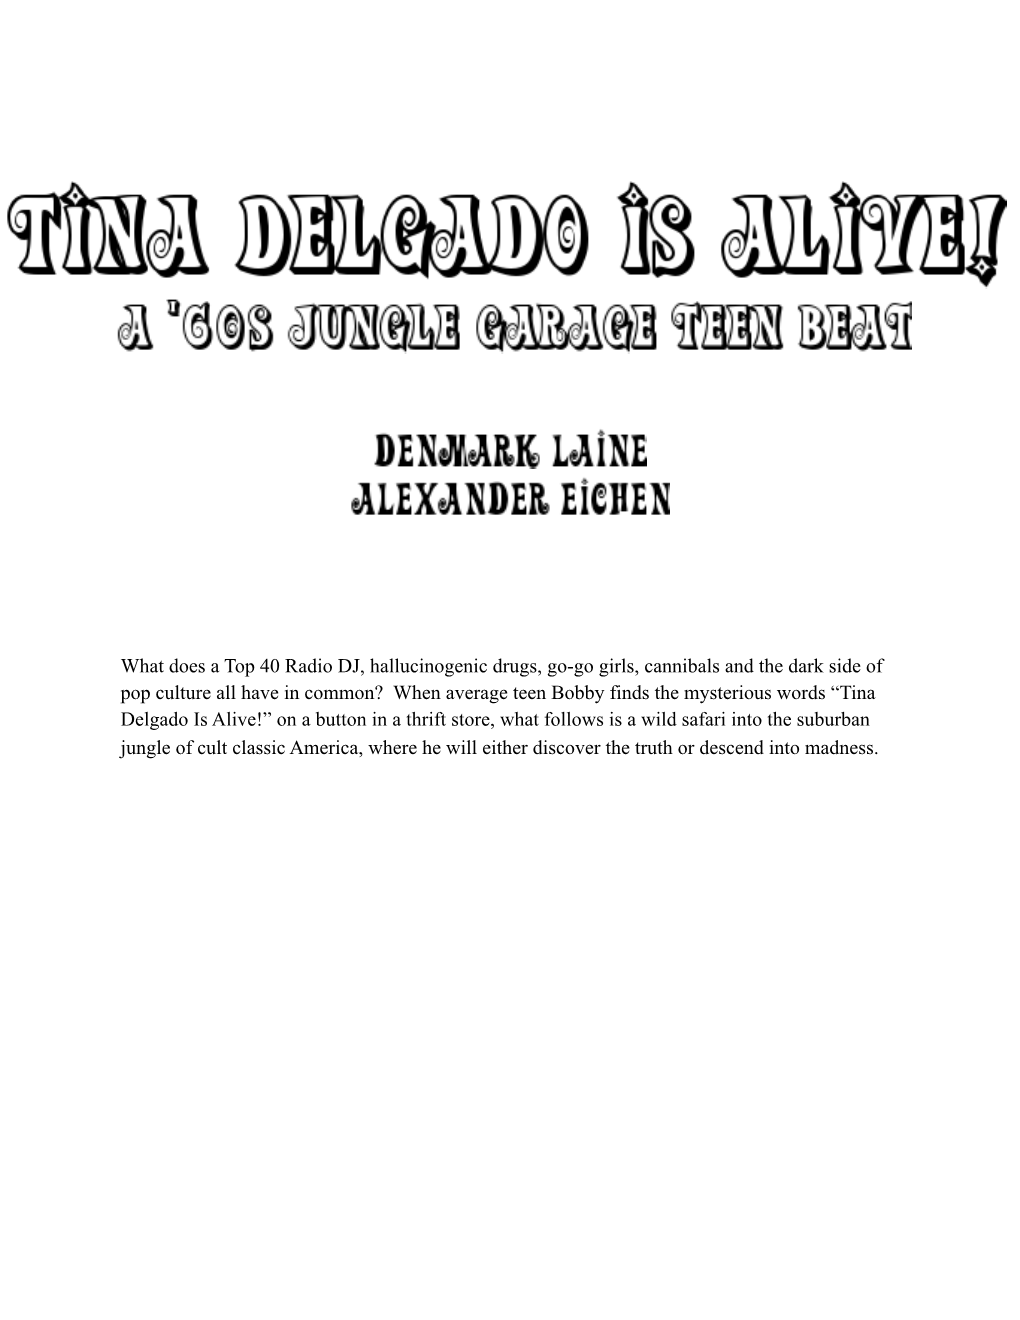 Tina Delgado Is Alive!